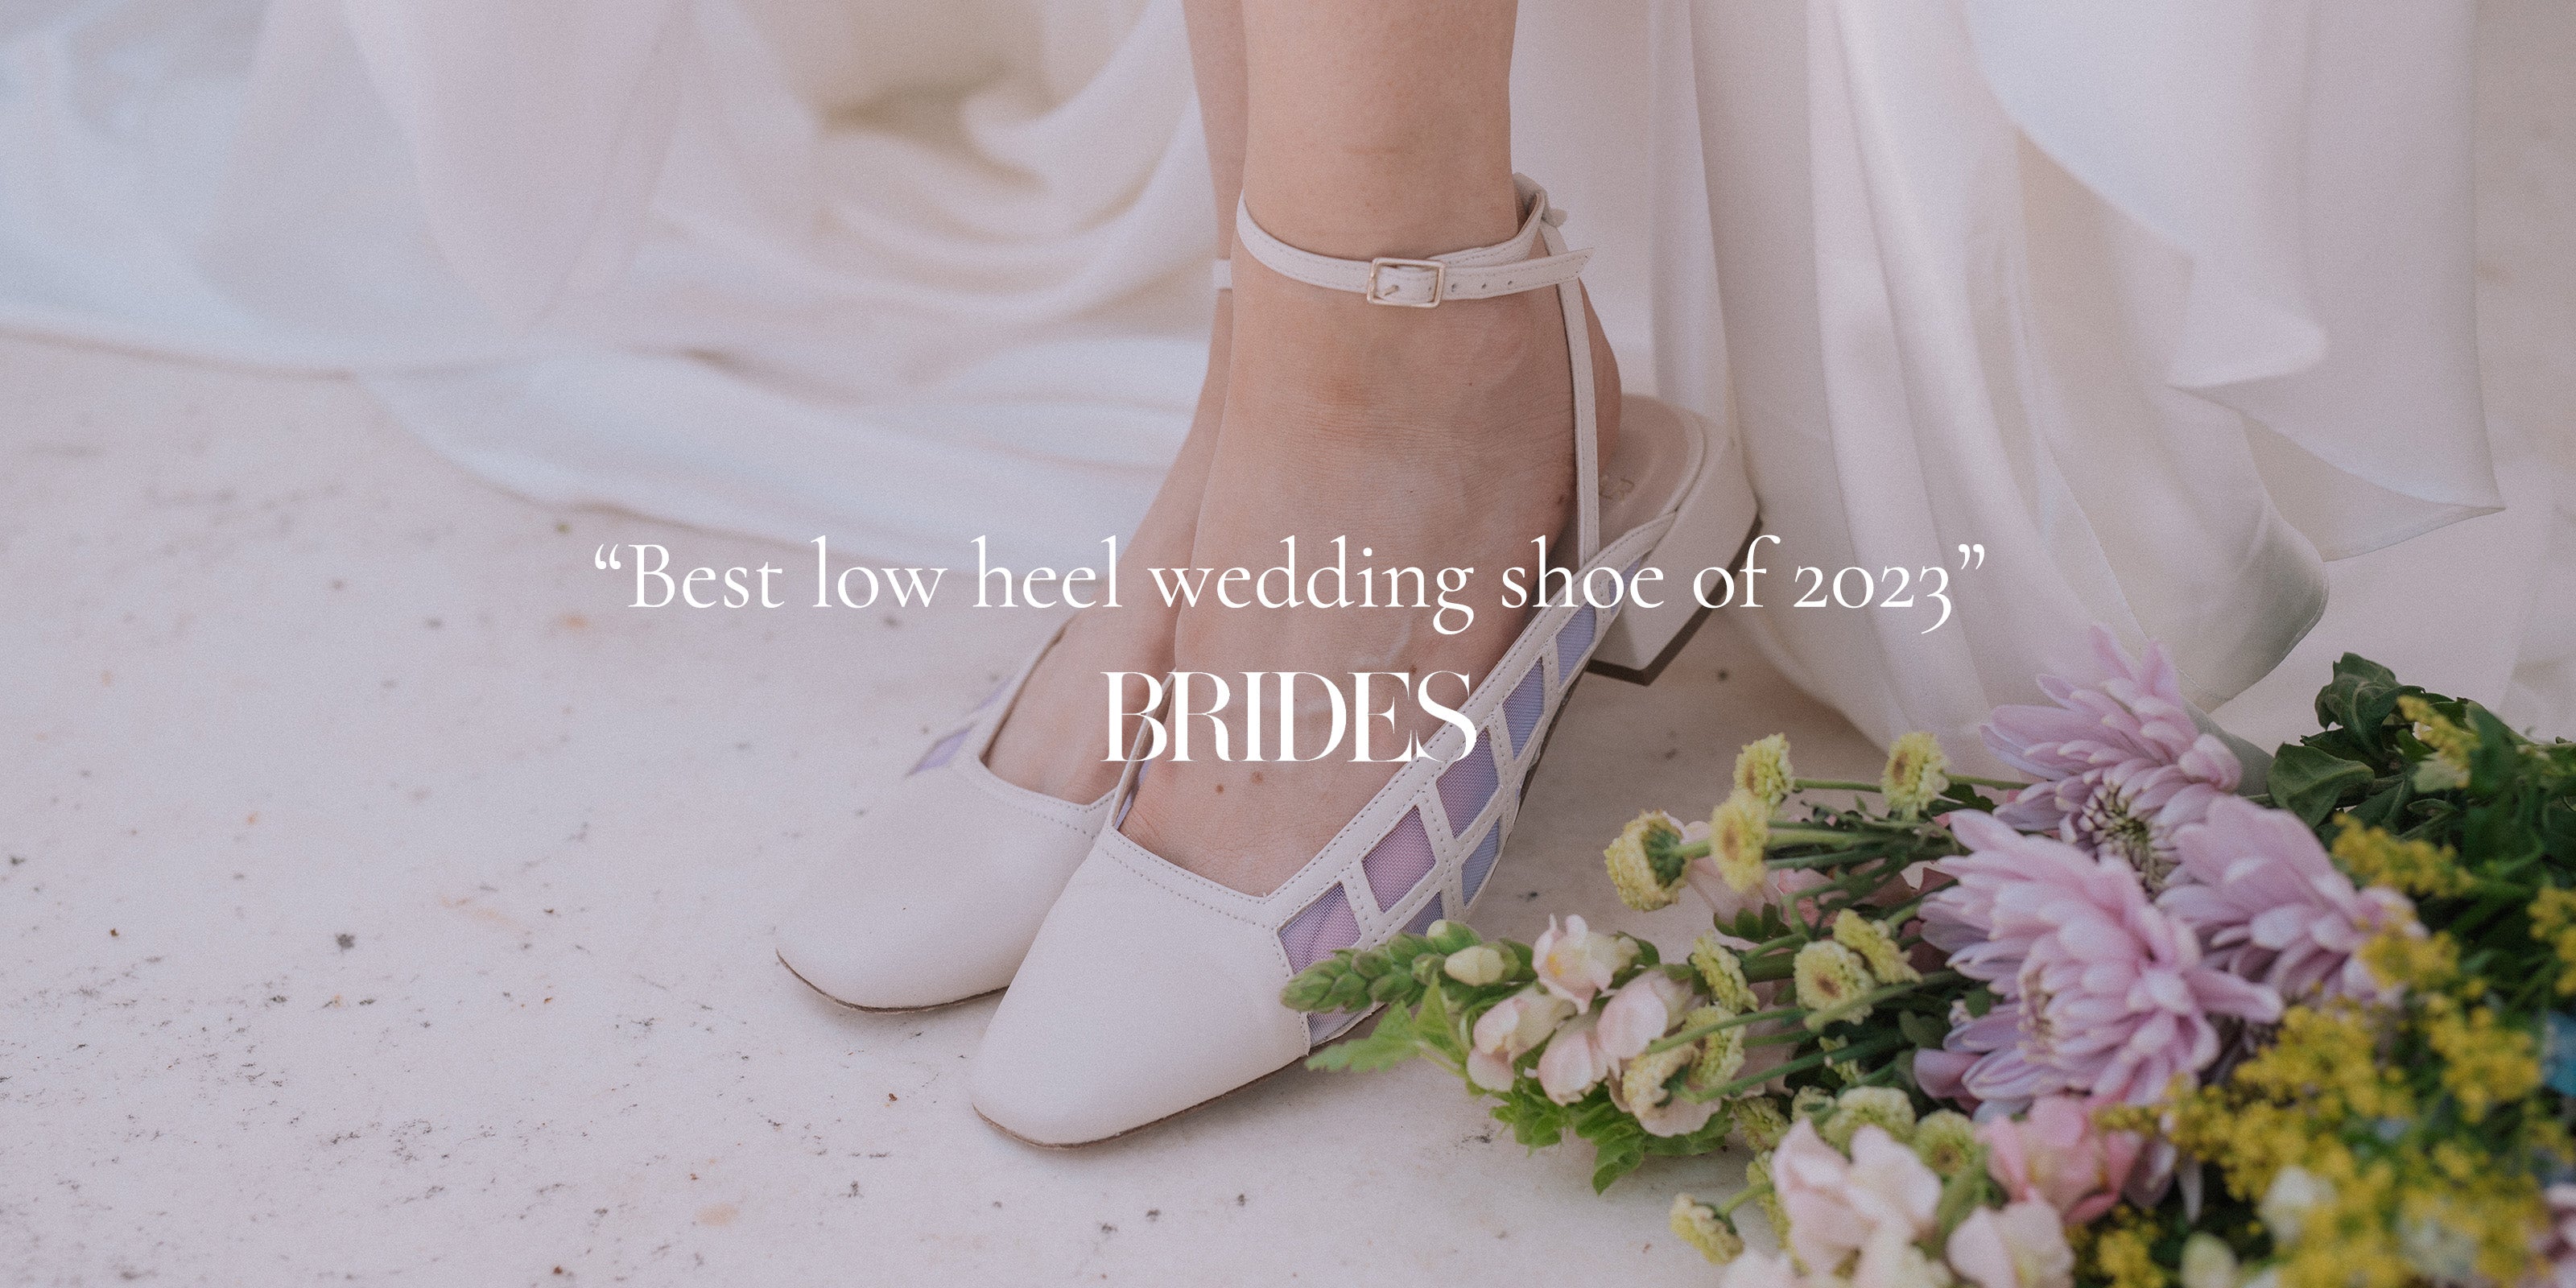 Best Low Heel Wedding Shoe 2023 - Quotes - Desktop View